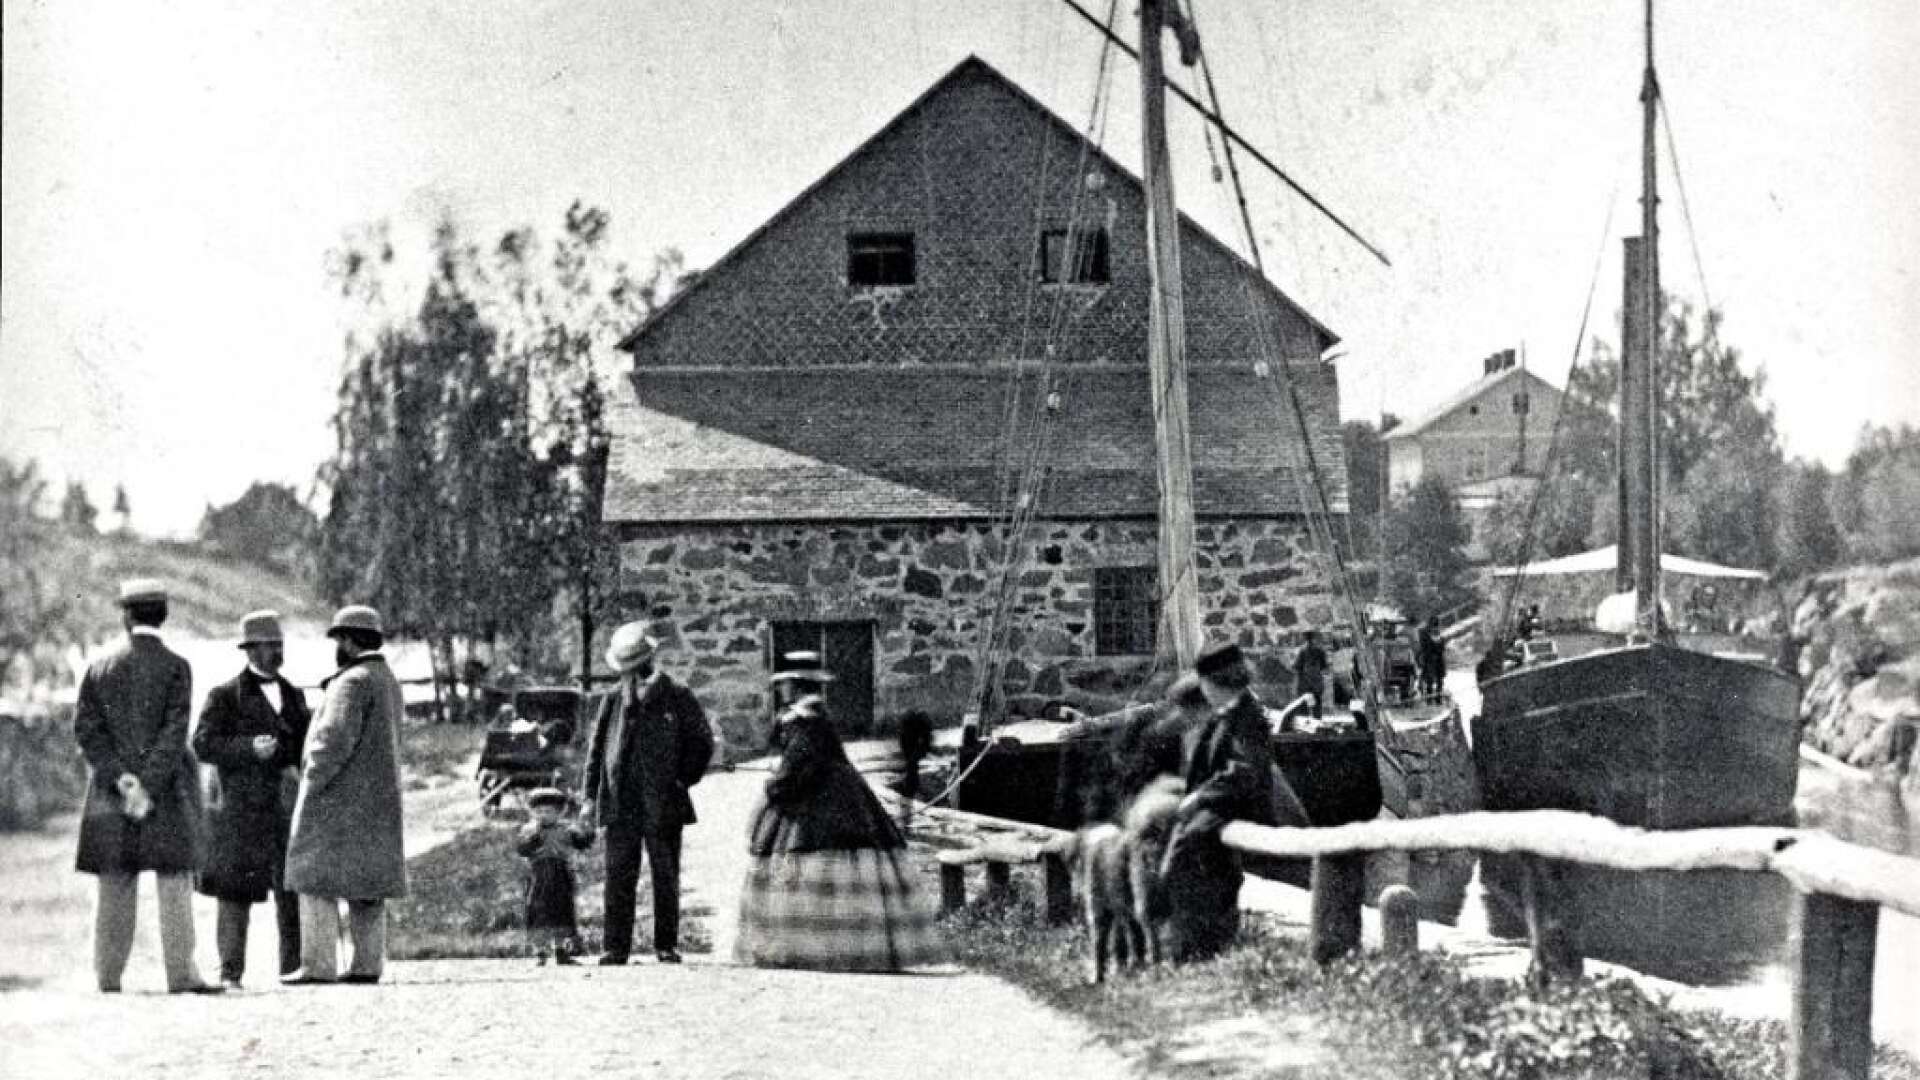 När denna bild togs är oklart, men det torde vara en av de äldsta bilderna från Säffle. Damen bär krinolin. Det kan tyda på 1860-talet. Kanske var det en fotograf på hemresa efter att ha fotograferat den stora branden i Karlstad 1865 som passerade Säffle?